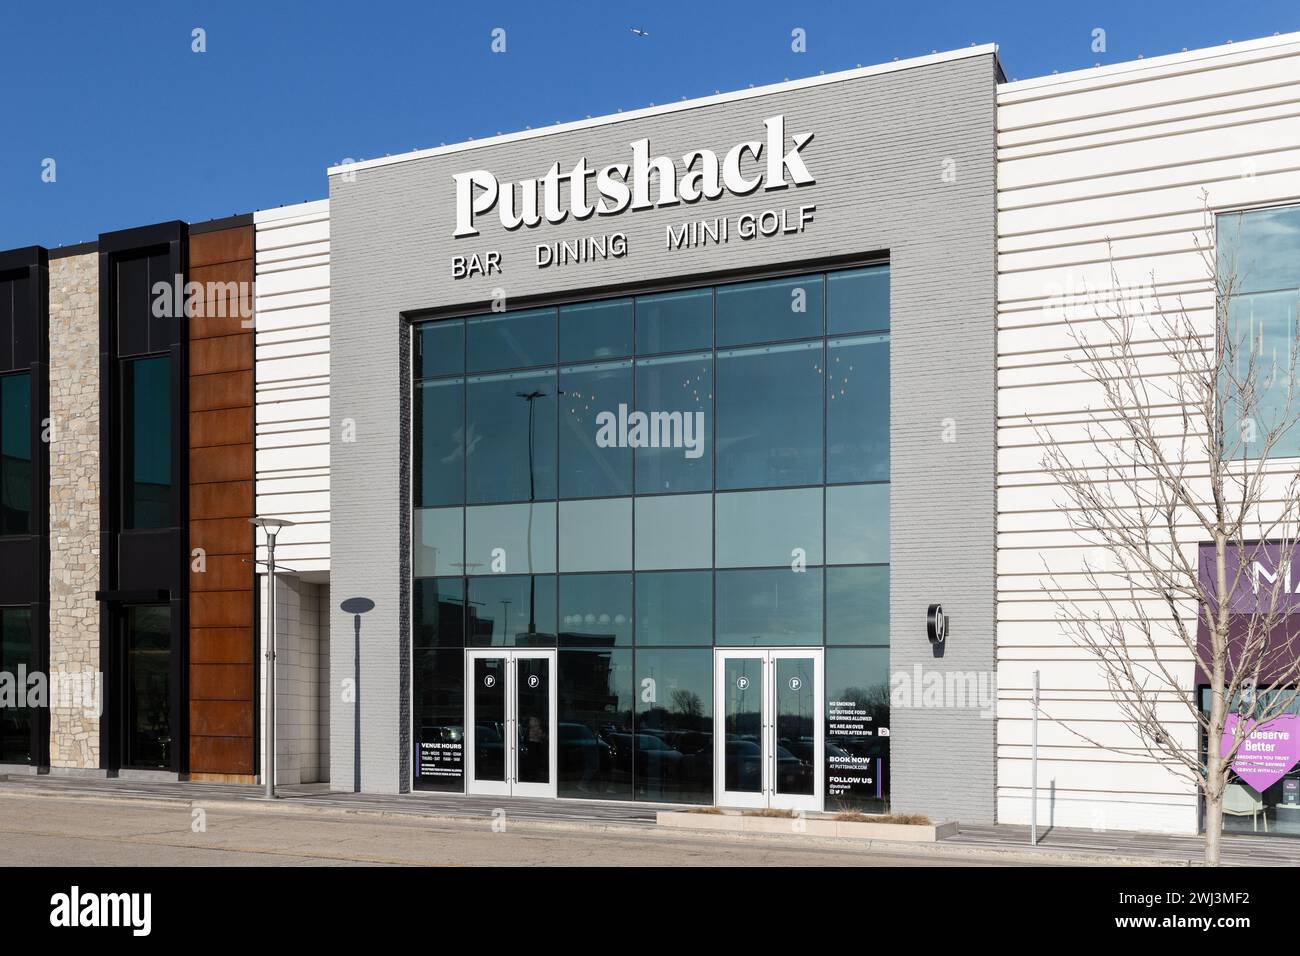 Puttshack ist ein Indoor-Minigolfunternehmen, das Waffenspiele und Speisen und Getränke anbietet. Stockfoto